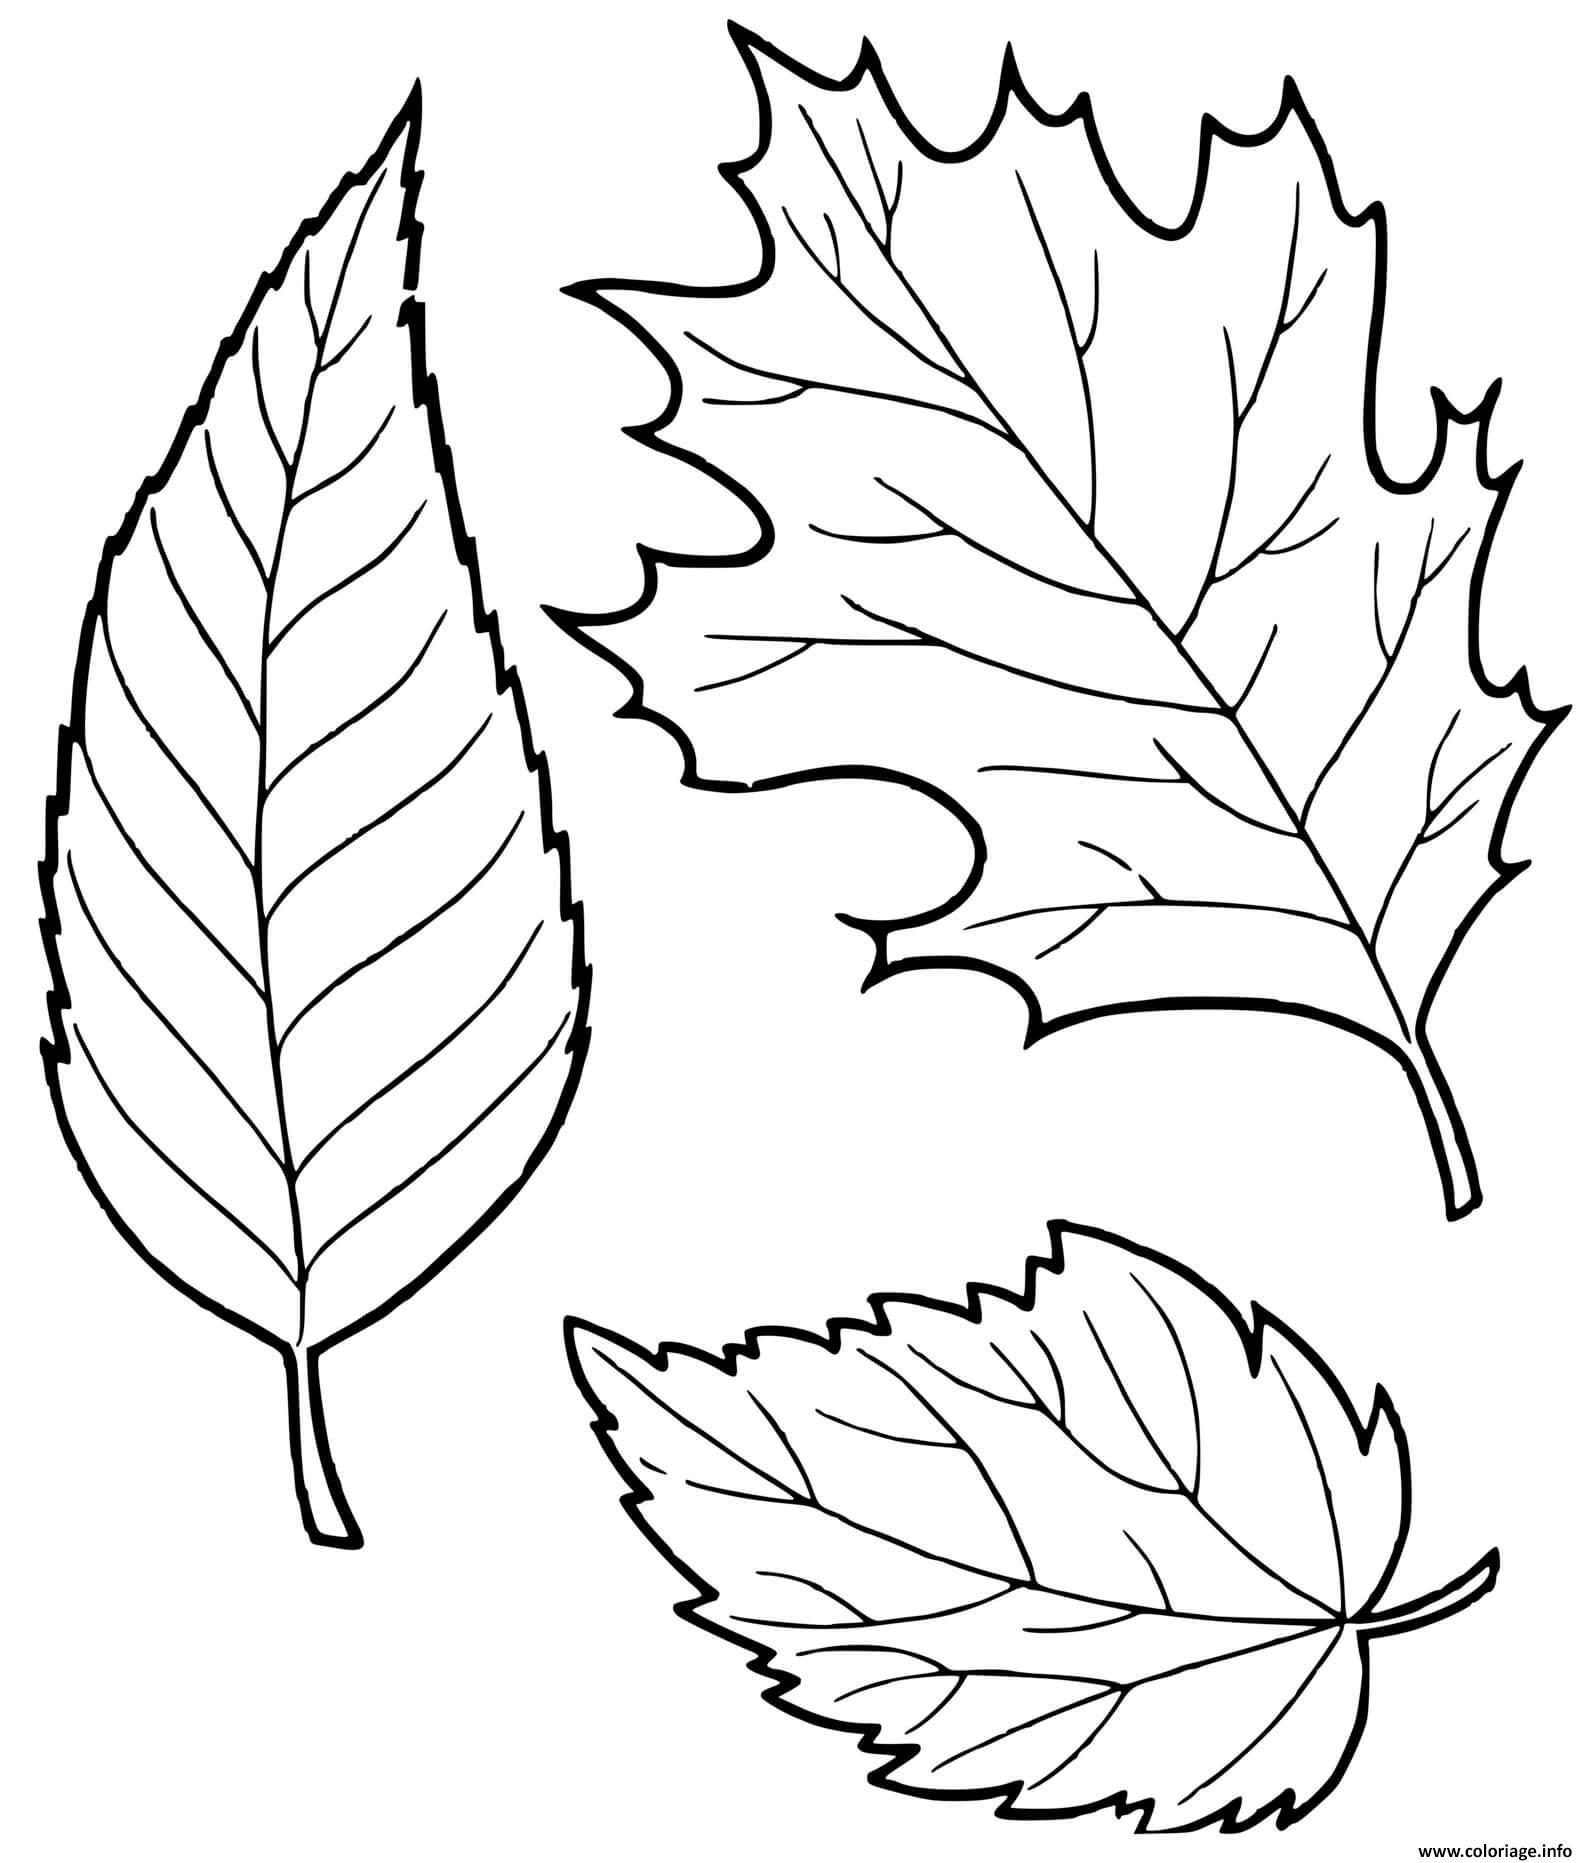 Dessin feuilles automne Coloriage Gratuit à Imprimer